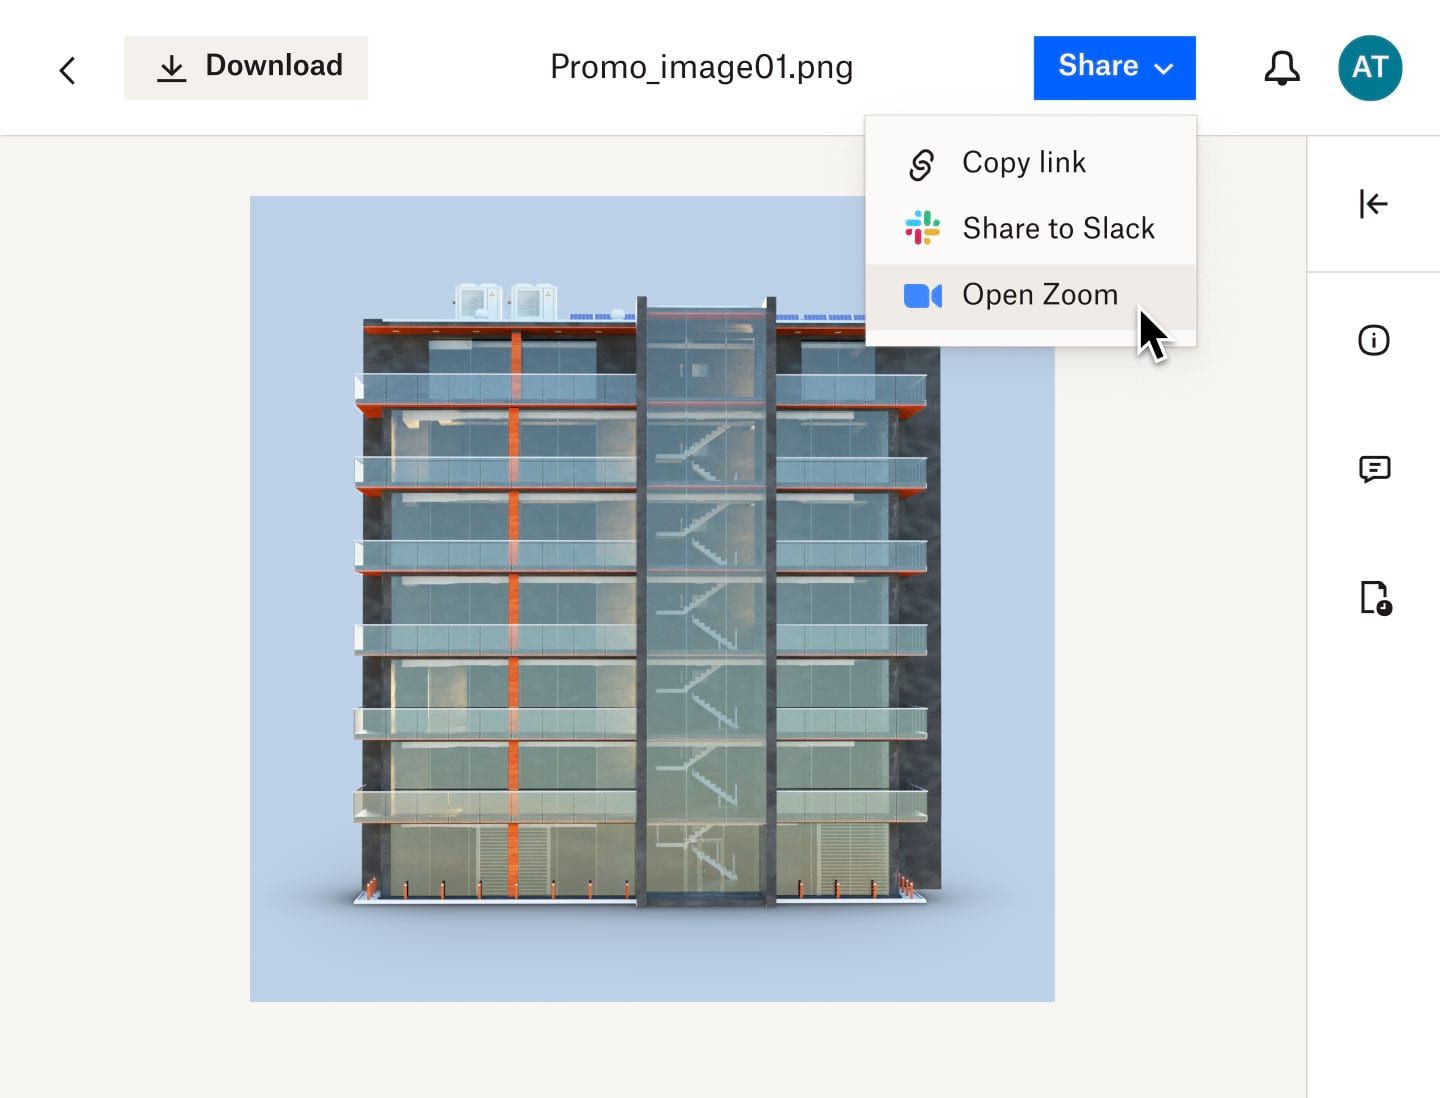 Пользователь нажимает на раскрывающееся меню, чтобы поделиться визуализацией поперечного сечения здания на Zoom